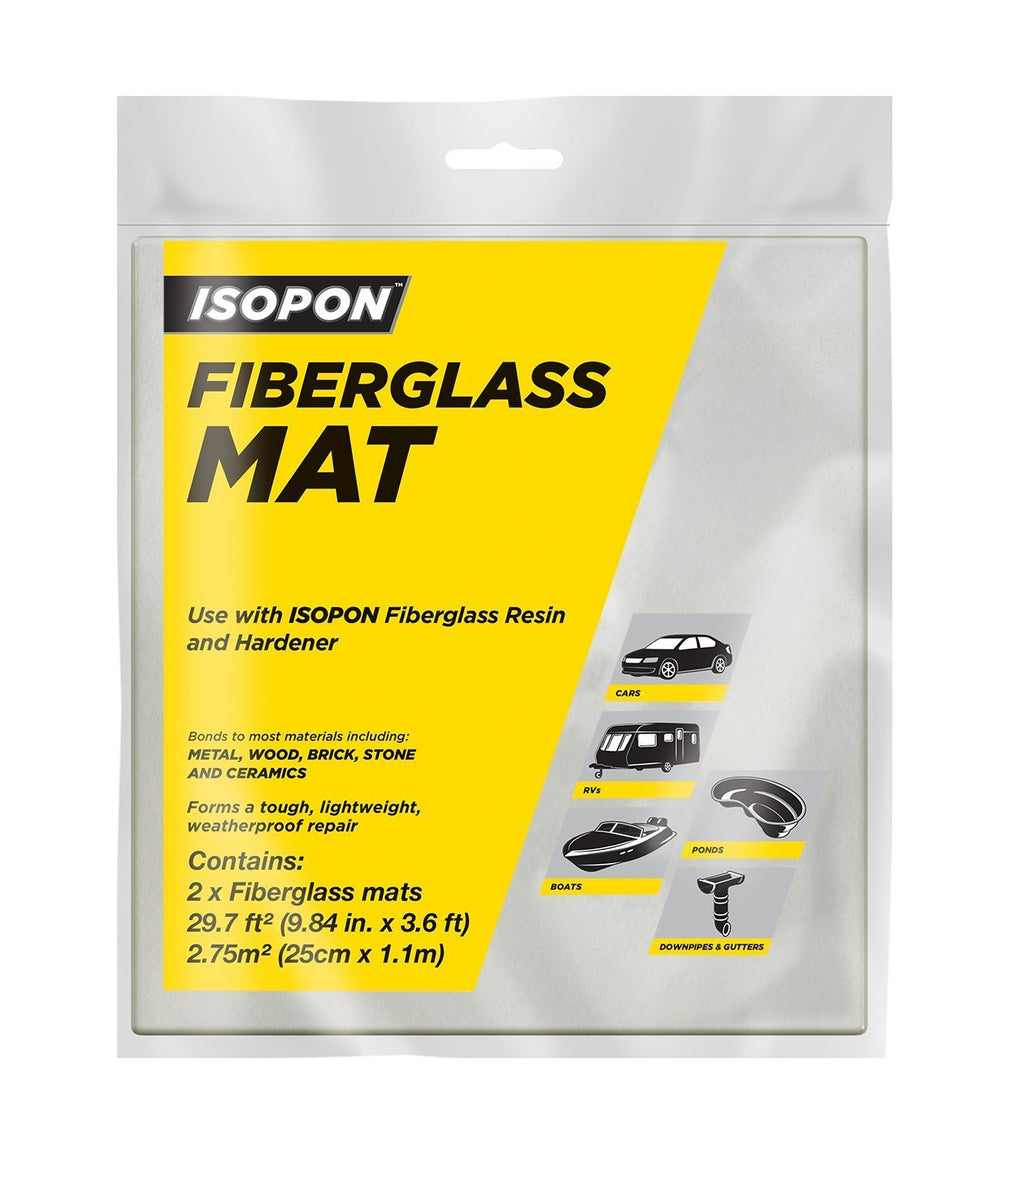  [AUSTRALIA] - Isopon Fiberglass Mat (6 sq.)